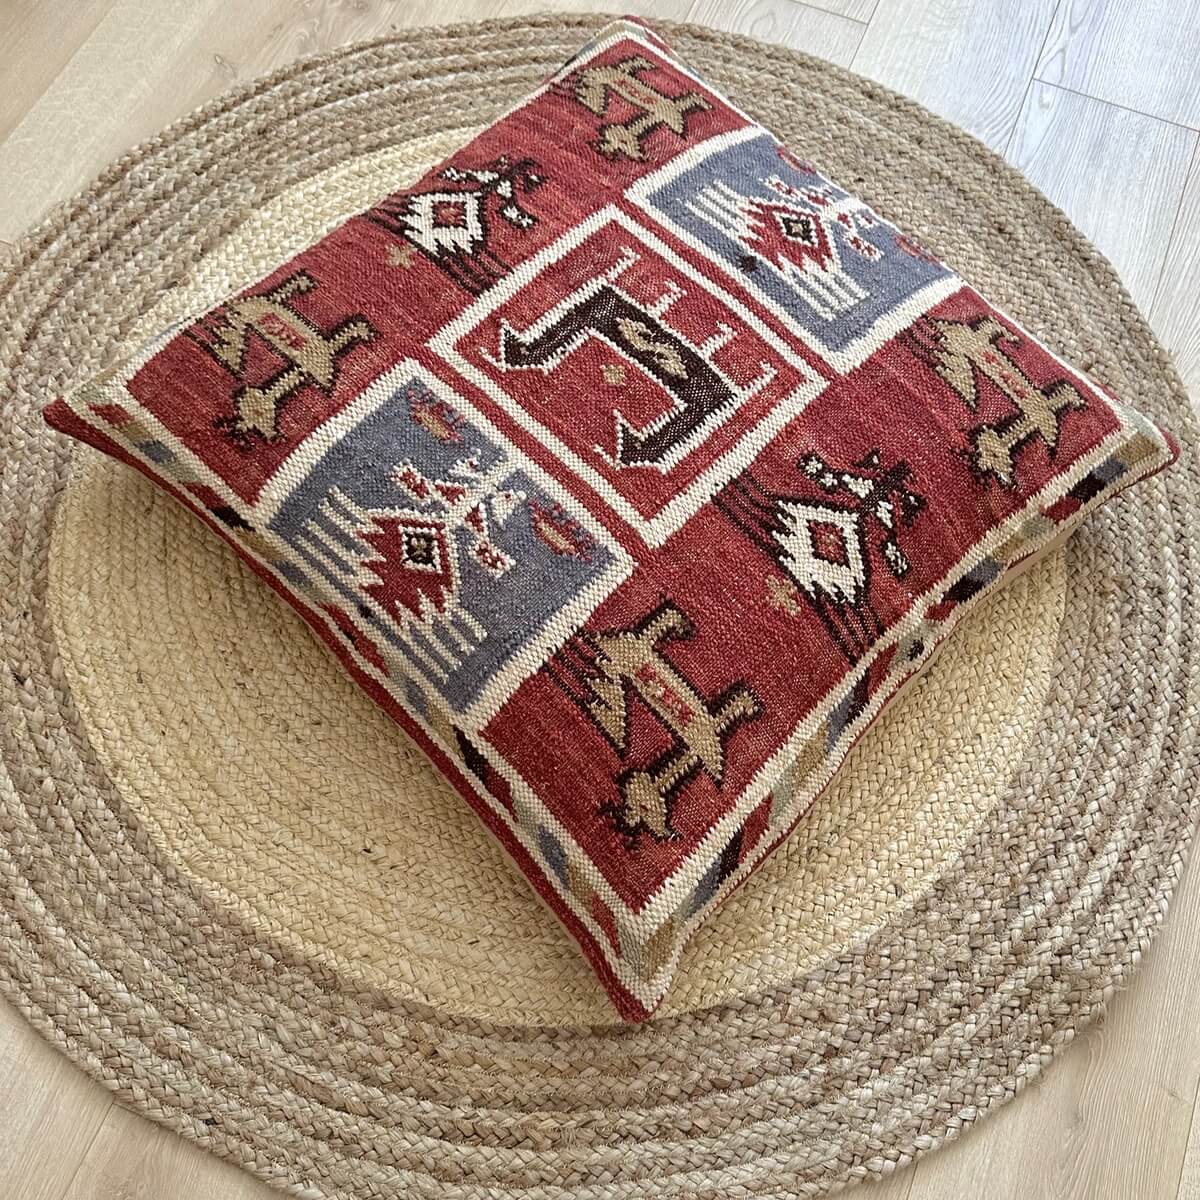 perna de podea kilim birdsong, din lana naturala cu model aztec